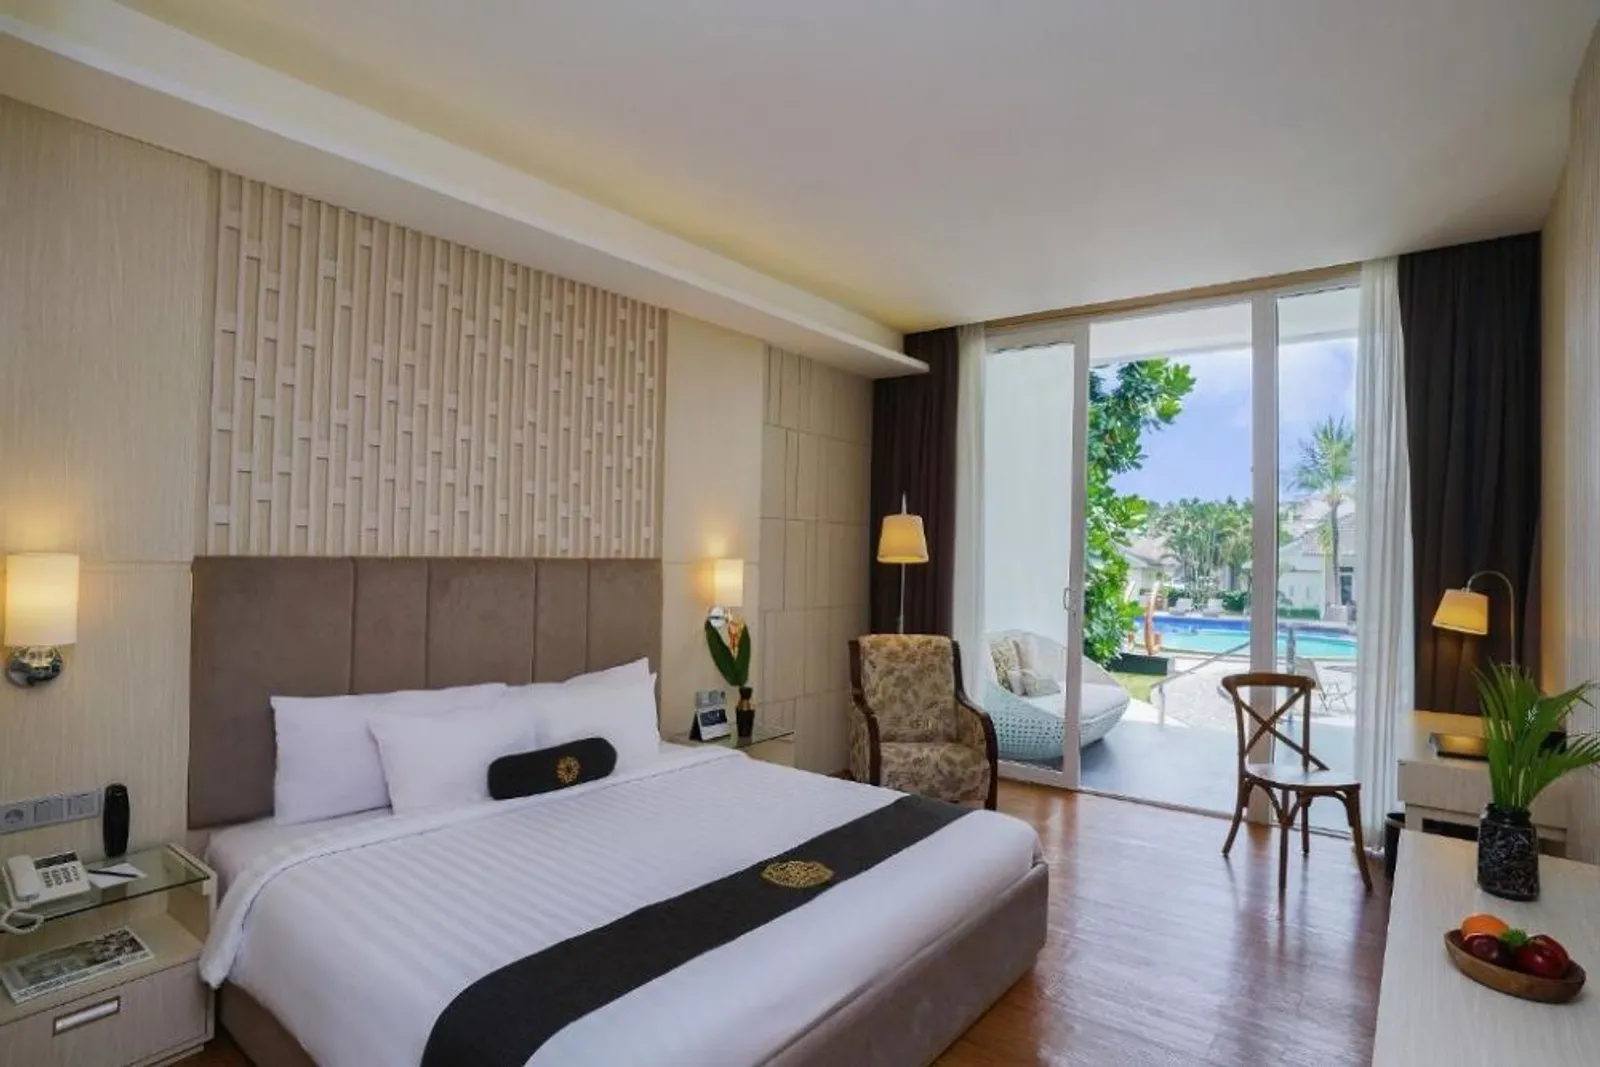 7 Rekomendasi Hotel di Purwokerto untuk Libur Lebaran